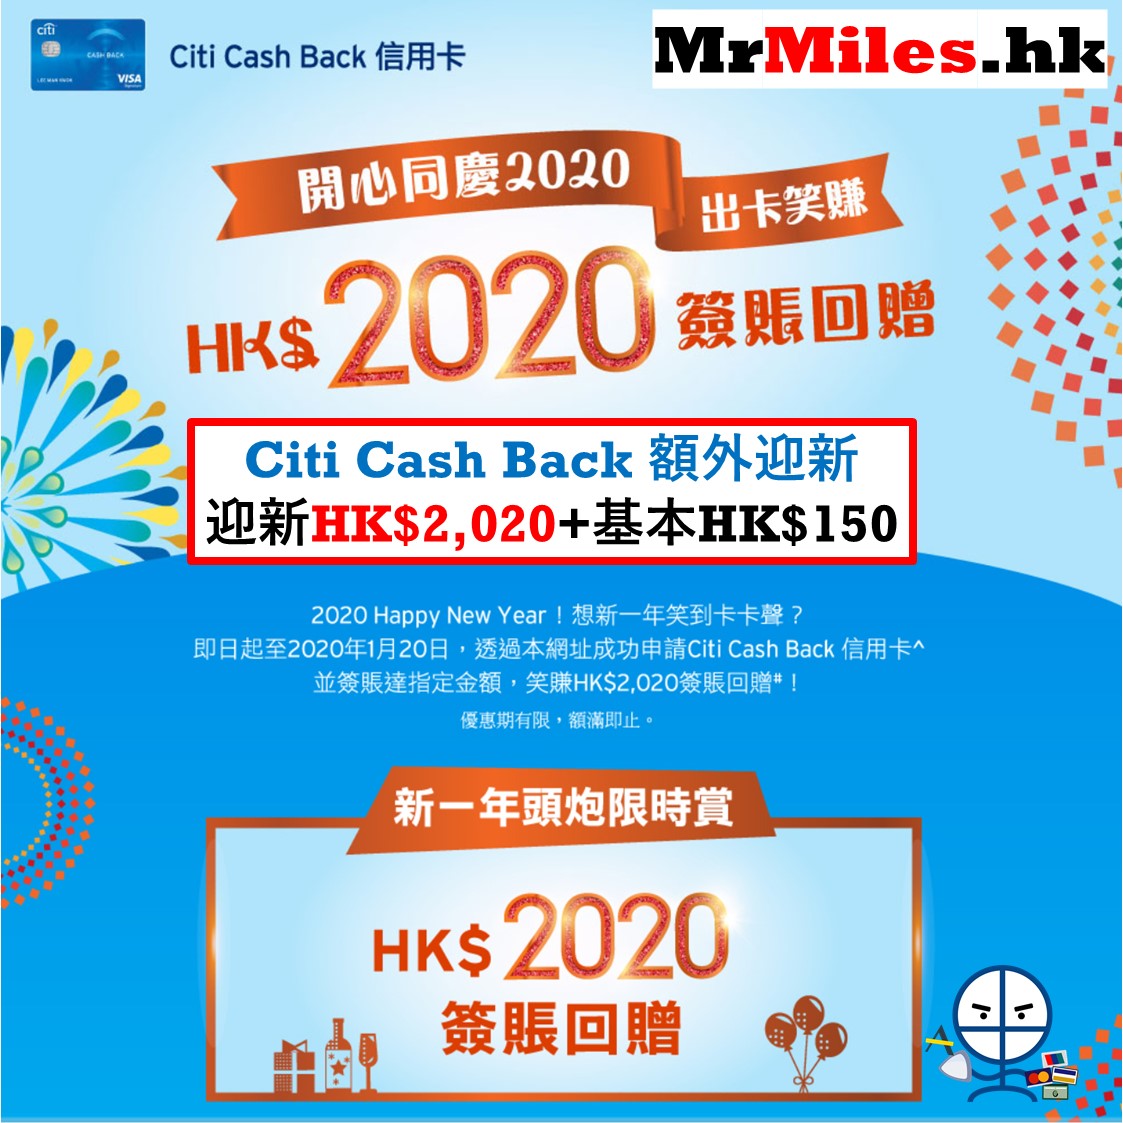 citi-cash-back-hk-2-020-150-mr-miles